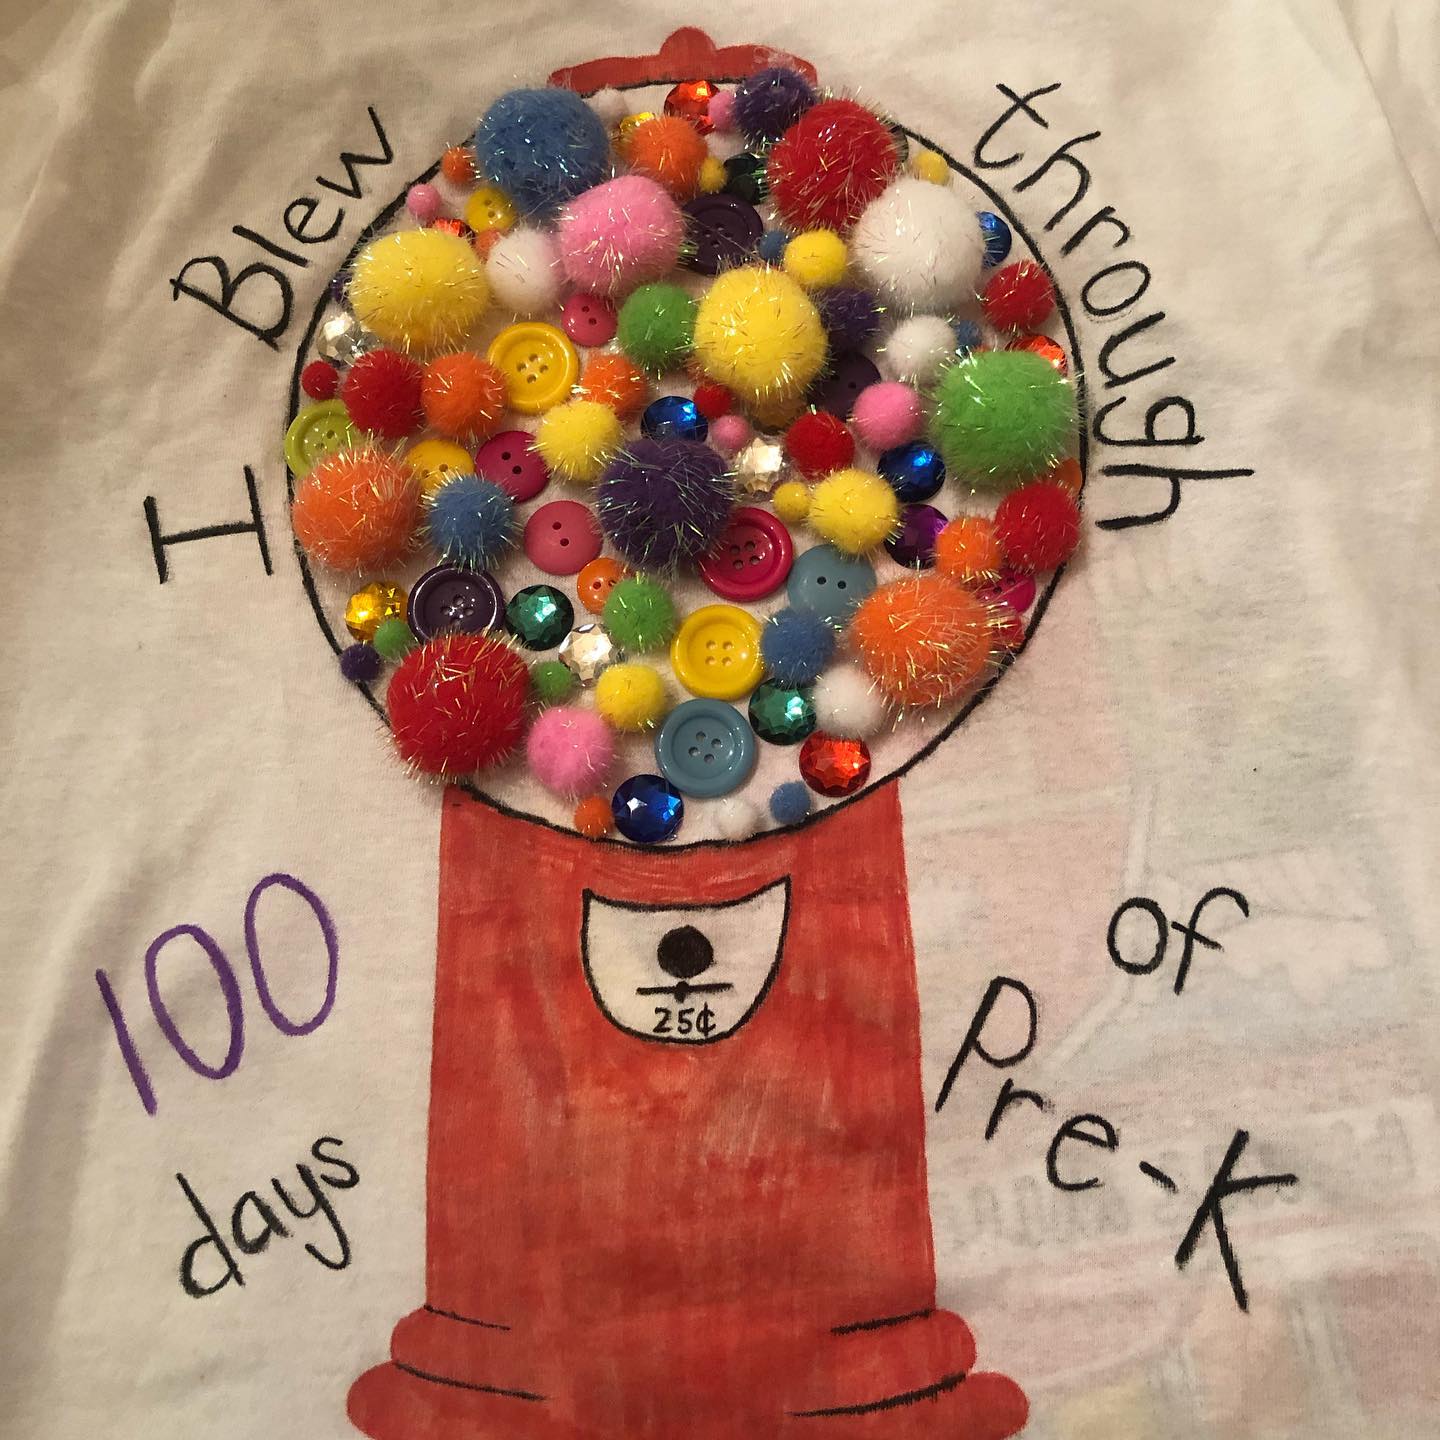 I Blew Through 100 Days of School - 100 Days of School Shirt Idea